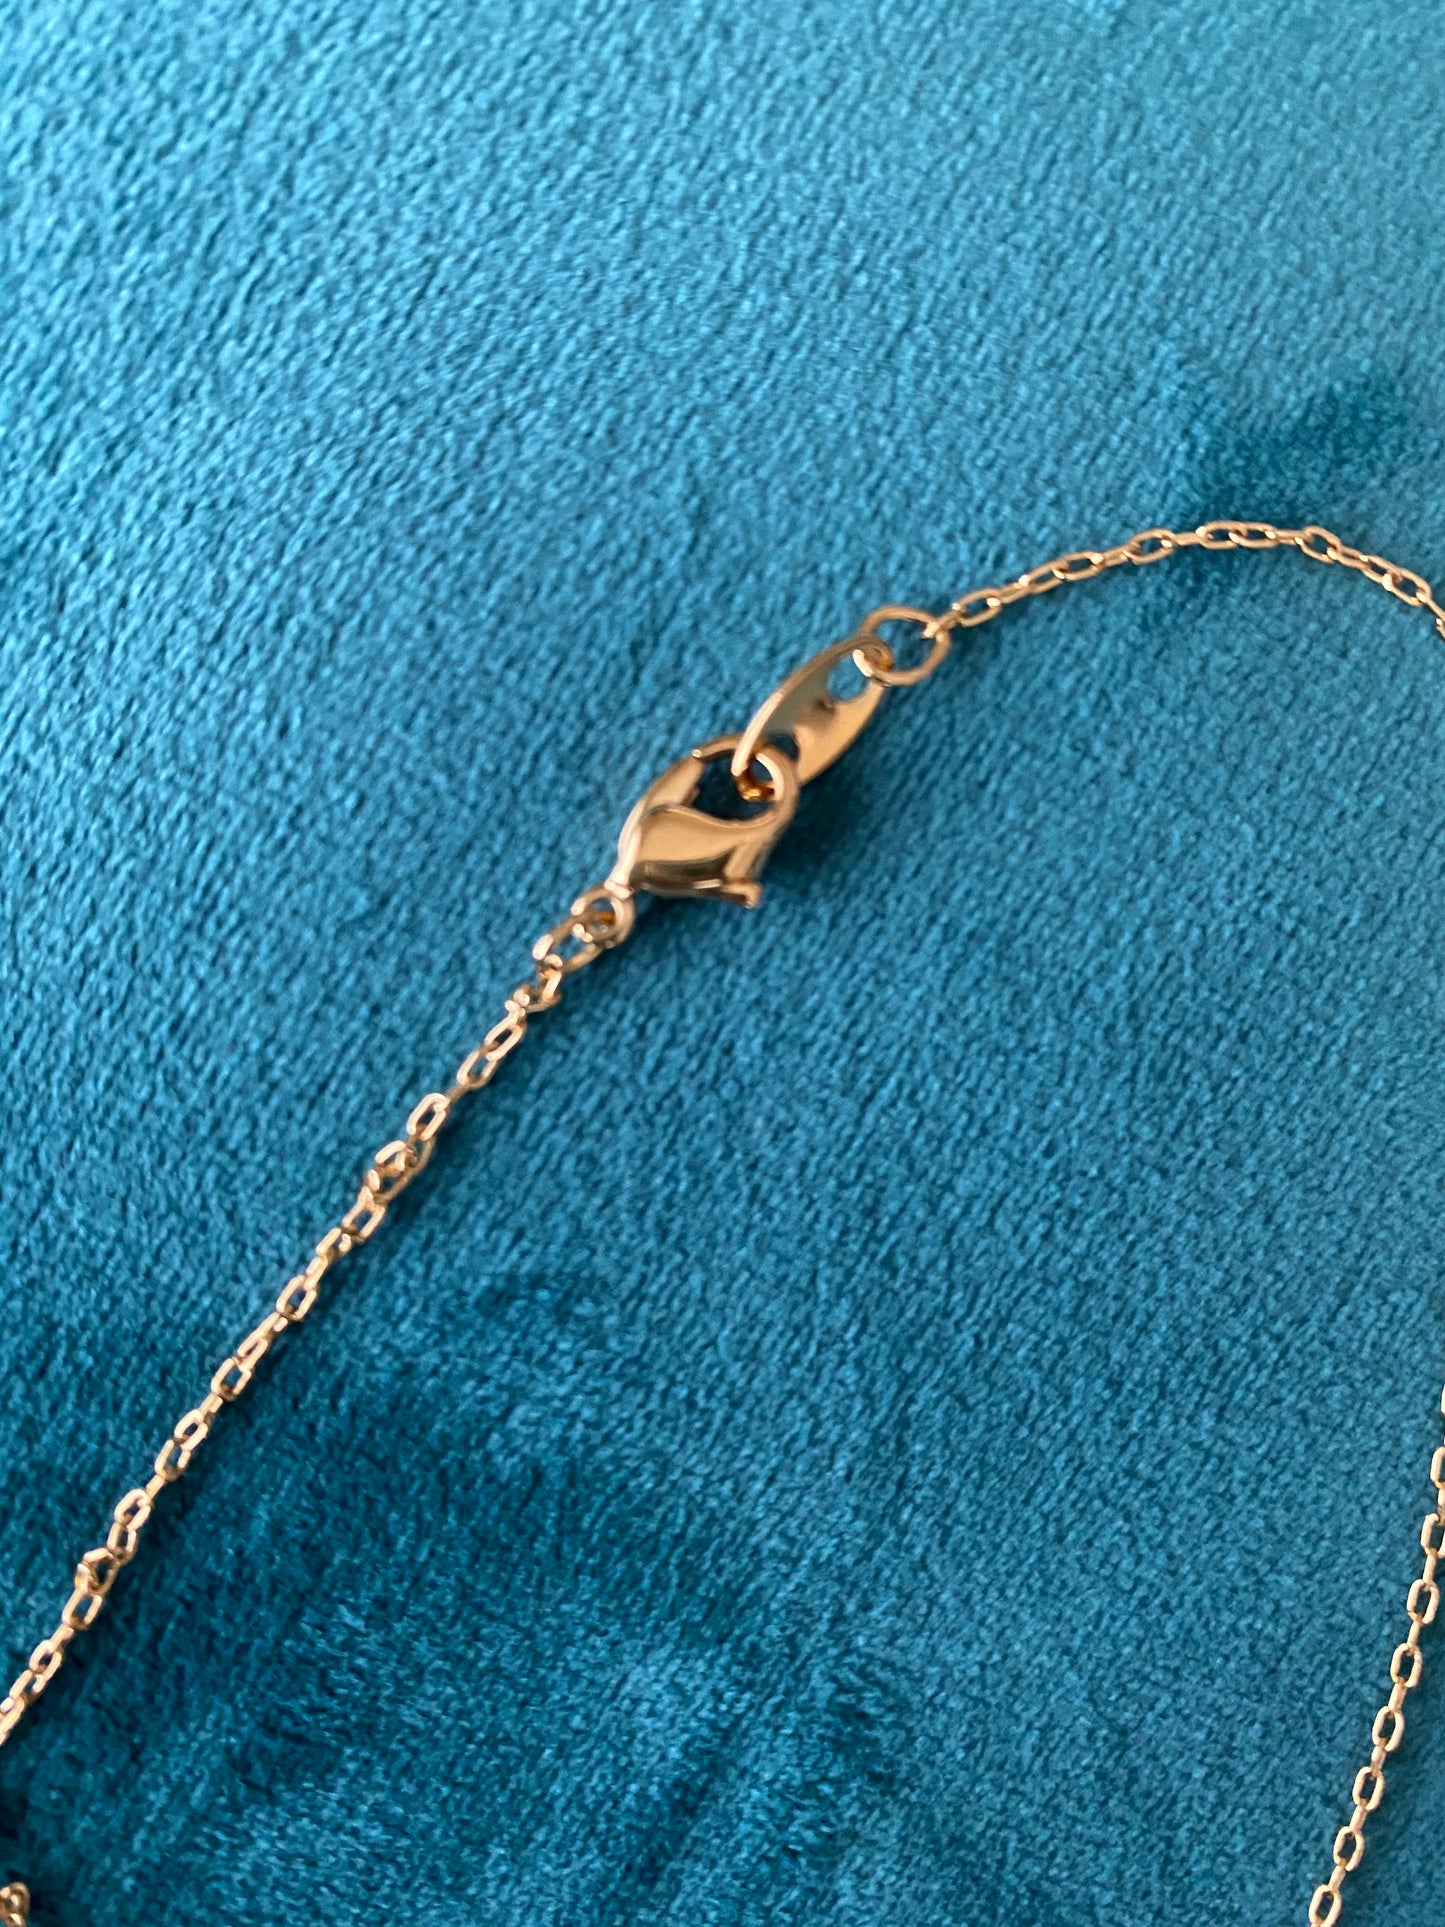 1990’s friendship necklaces